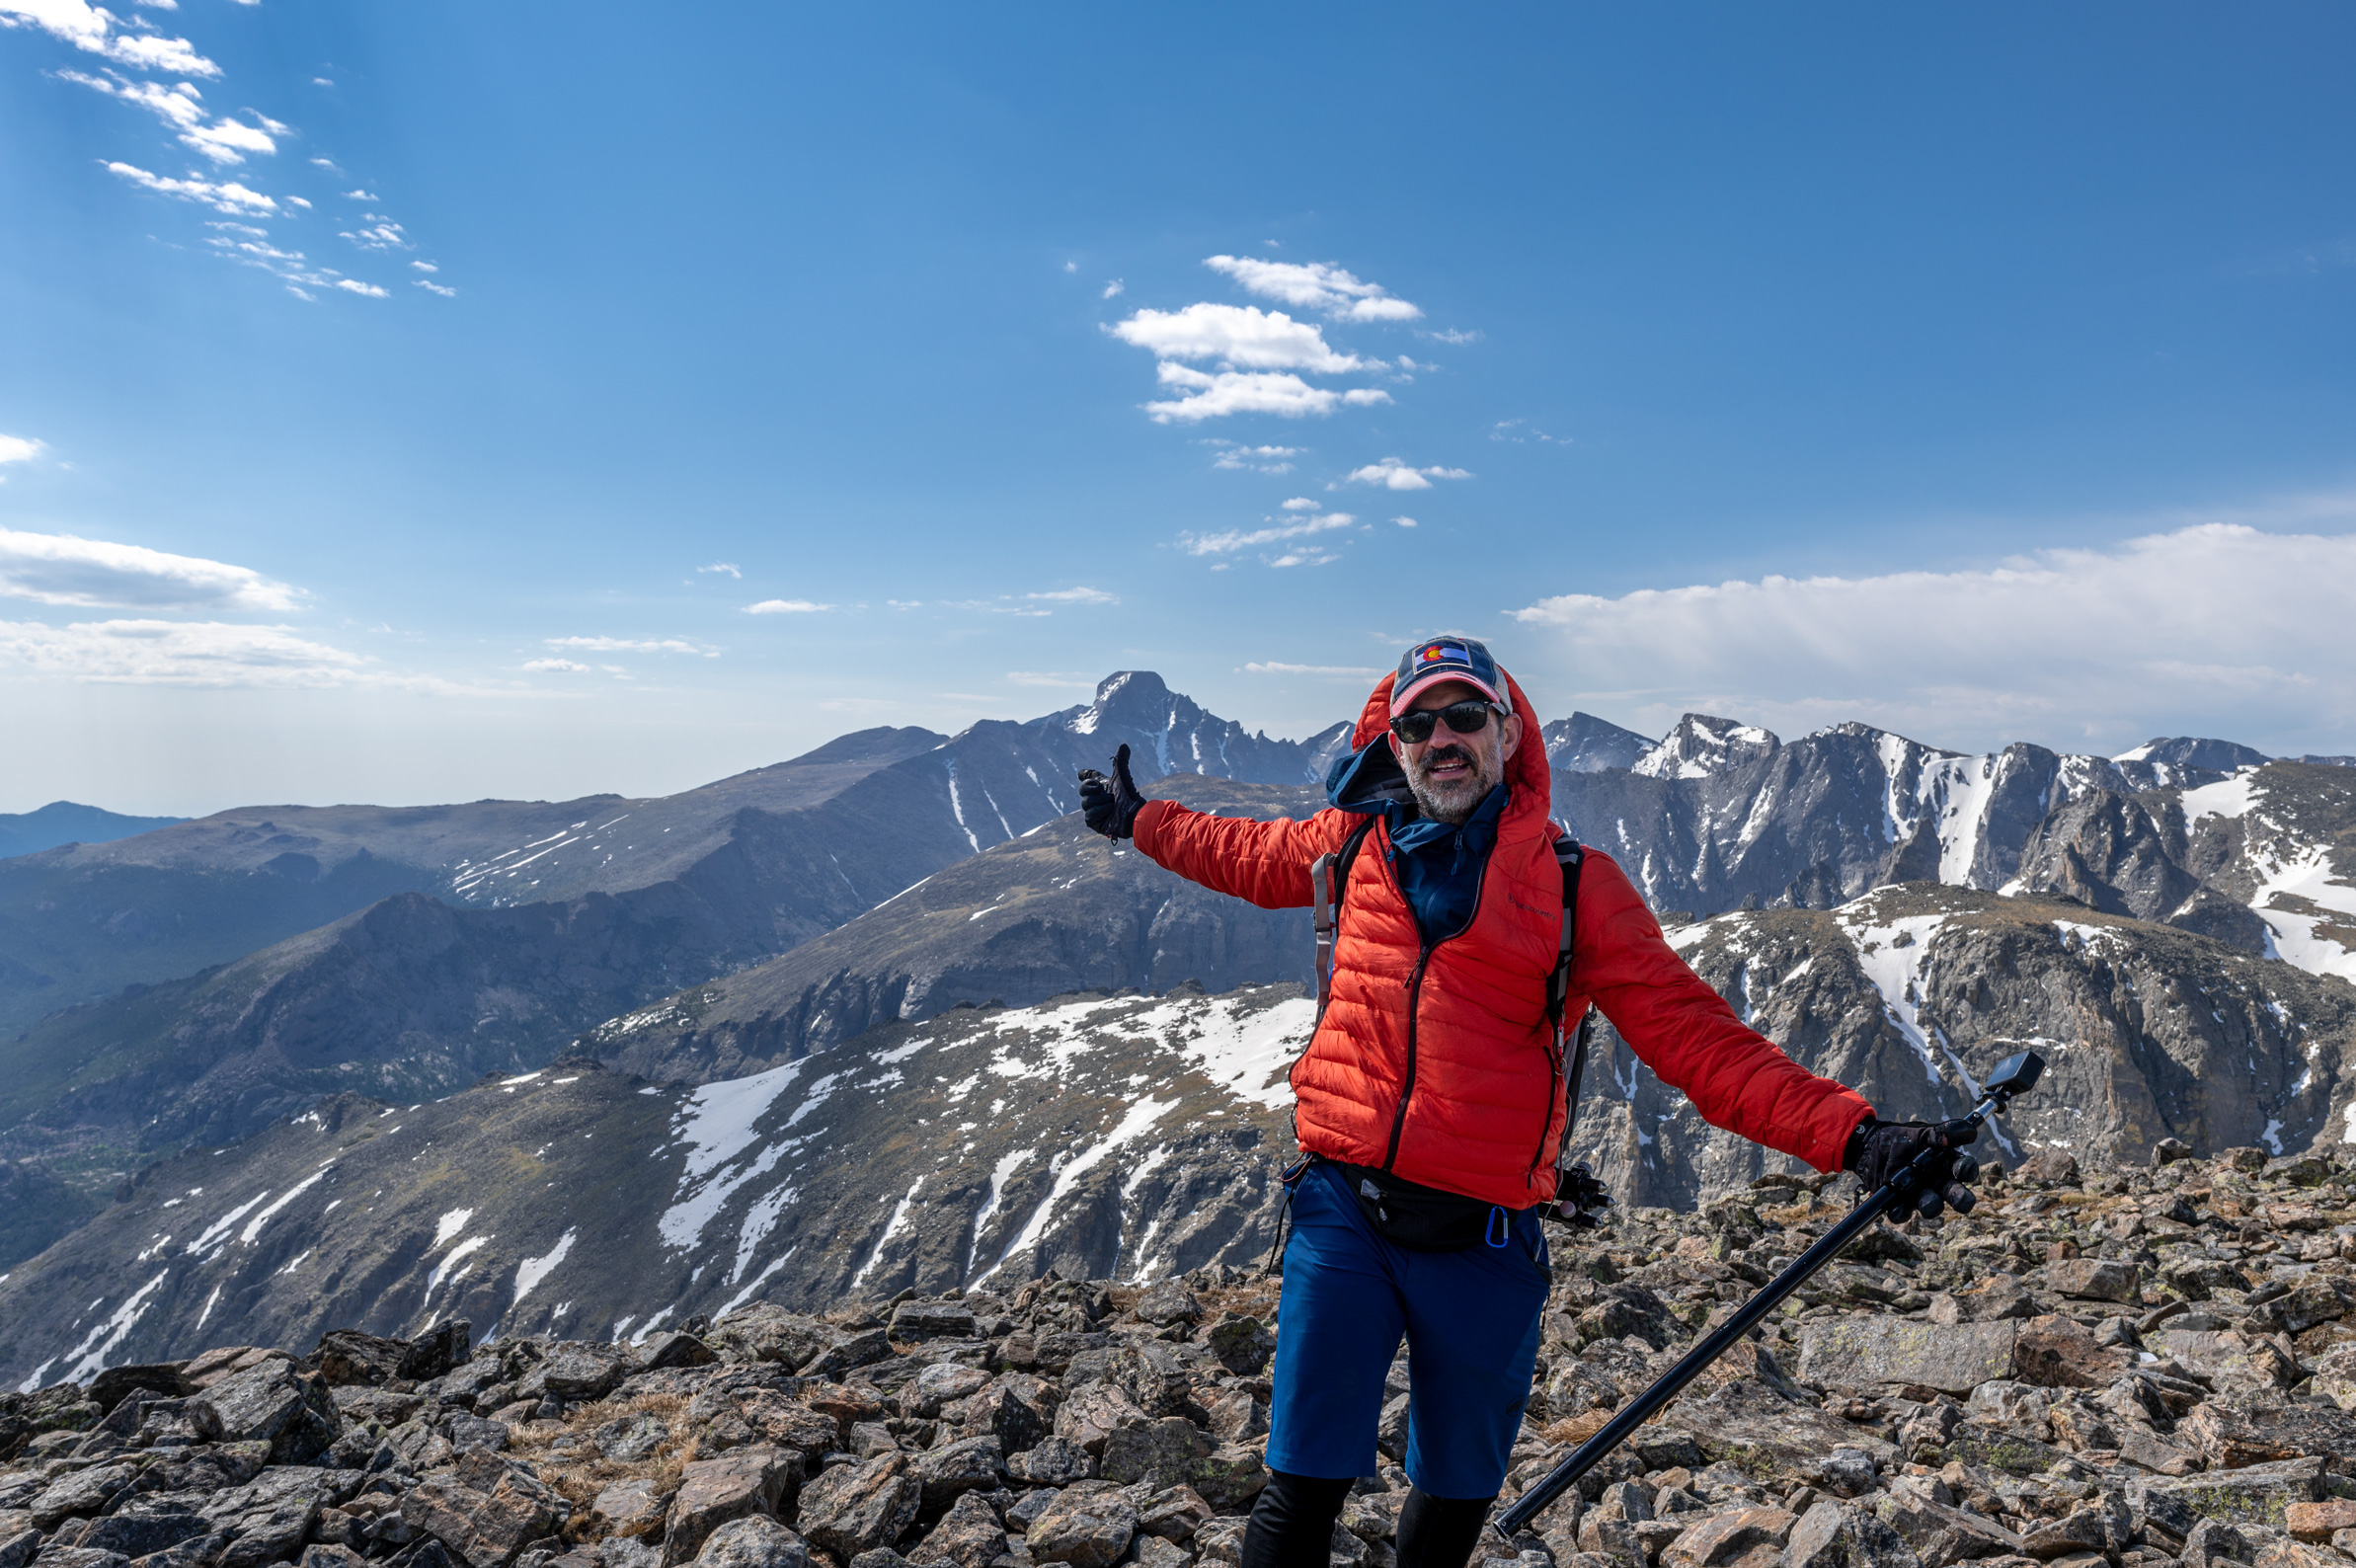 Hiker on the summit of hallett peak holding a gopro